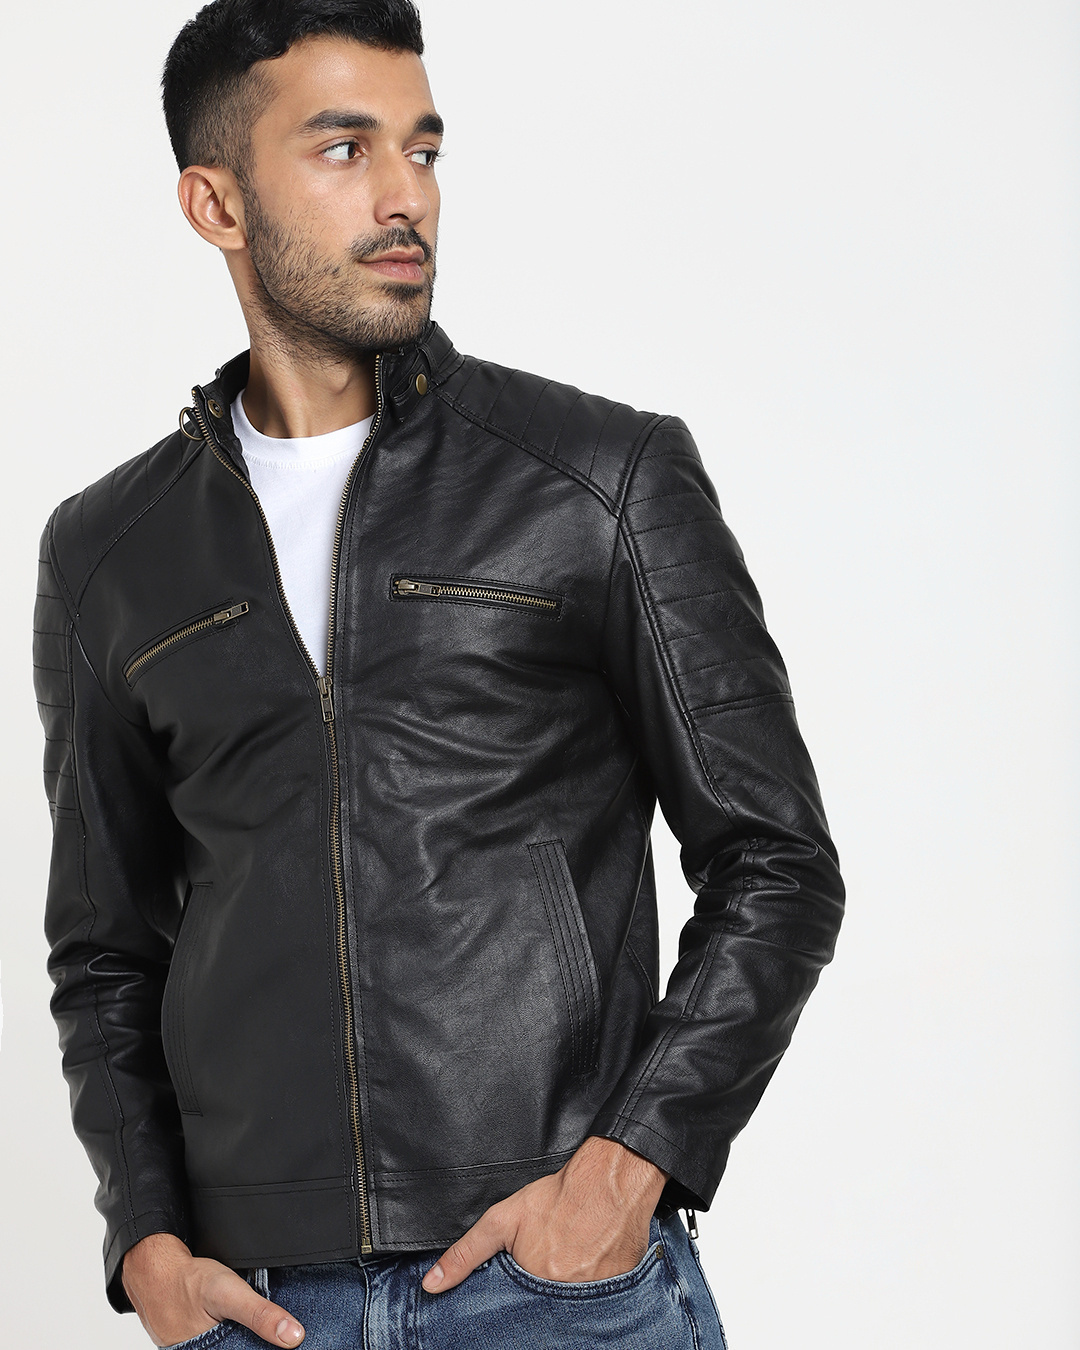 Buy Men's Black Leather Jacket Online at Bewakoof